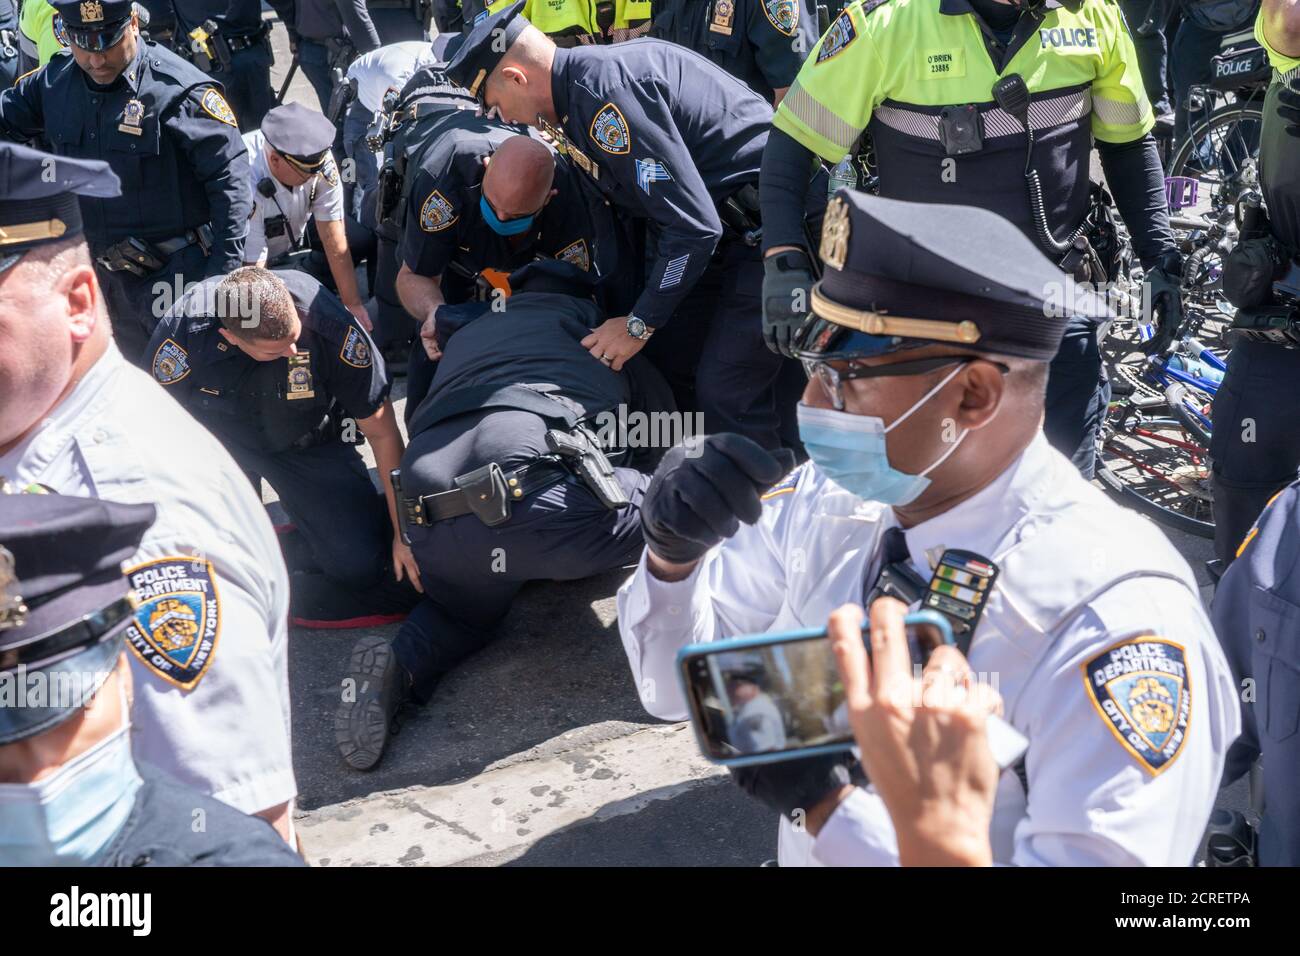 NUEVA YORK, NY - 19 DE SEPTIEMBRE de 2020: La policía arresta a 86 personas en una protesta contra la Agencia de Inmigración y Aduanas (ICE) en Times Square. Foto de stock